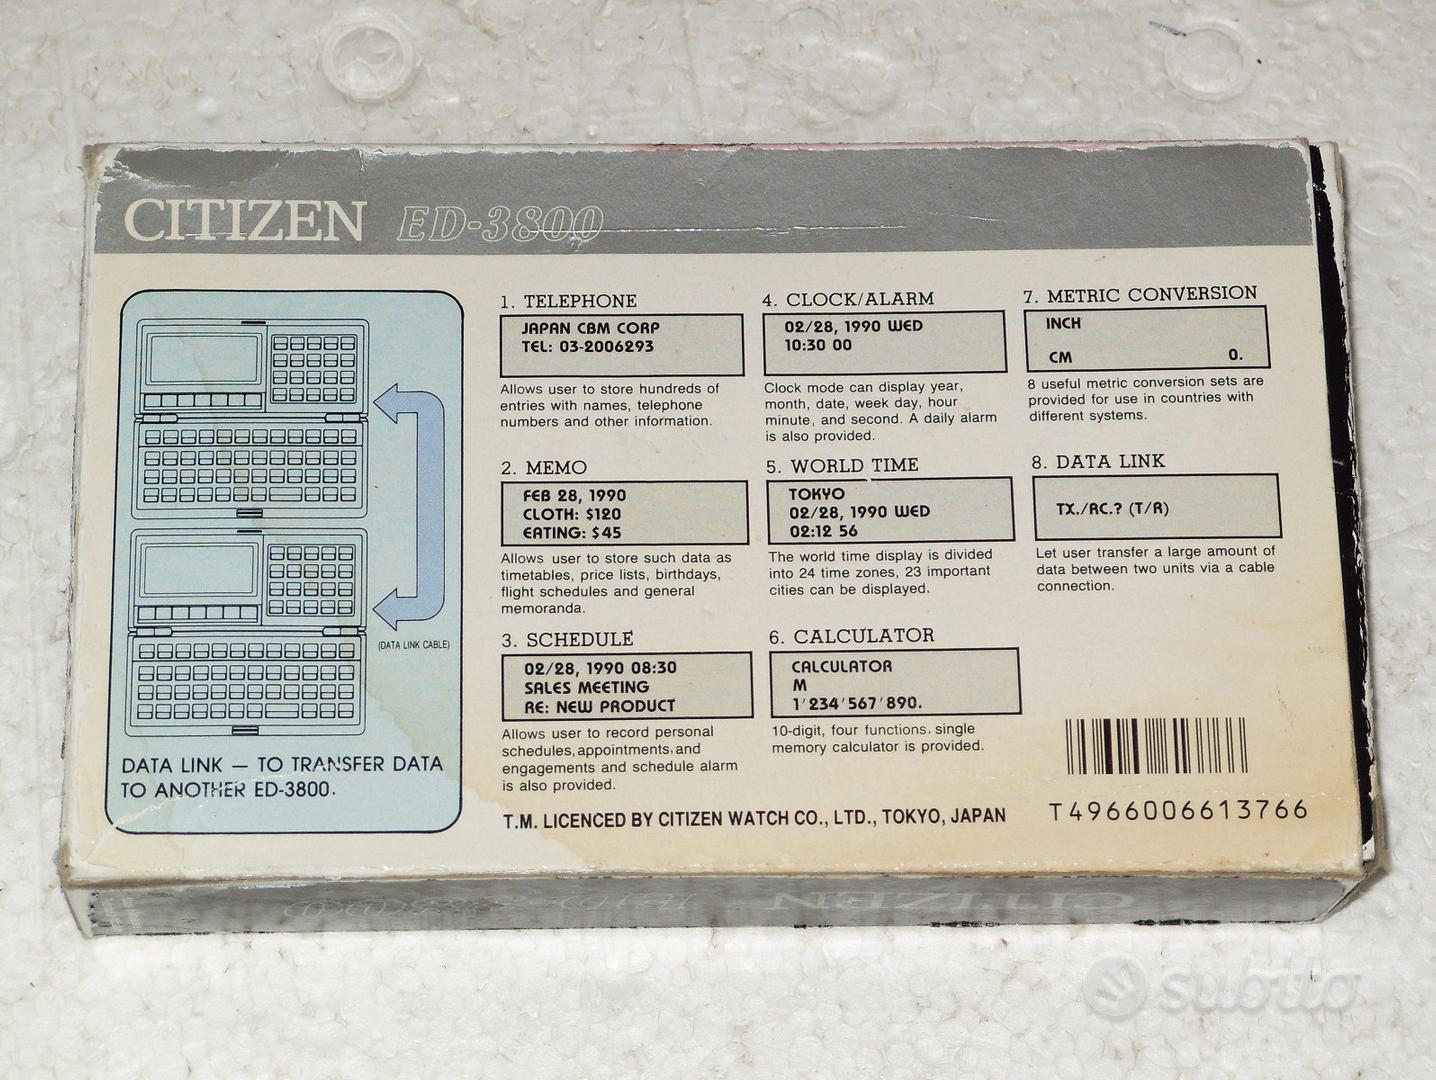 Agenda electrónica Citizen ED-3800 vintage, antigua. Como nueva!!!